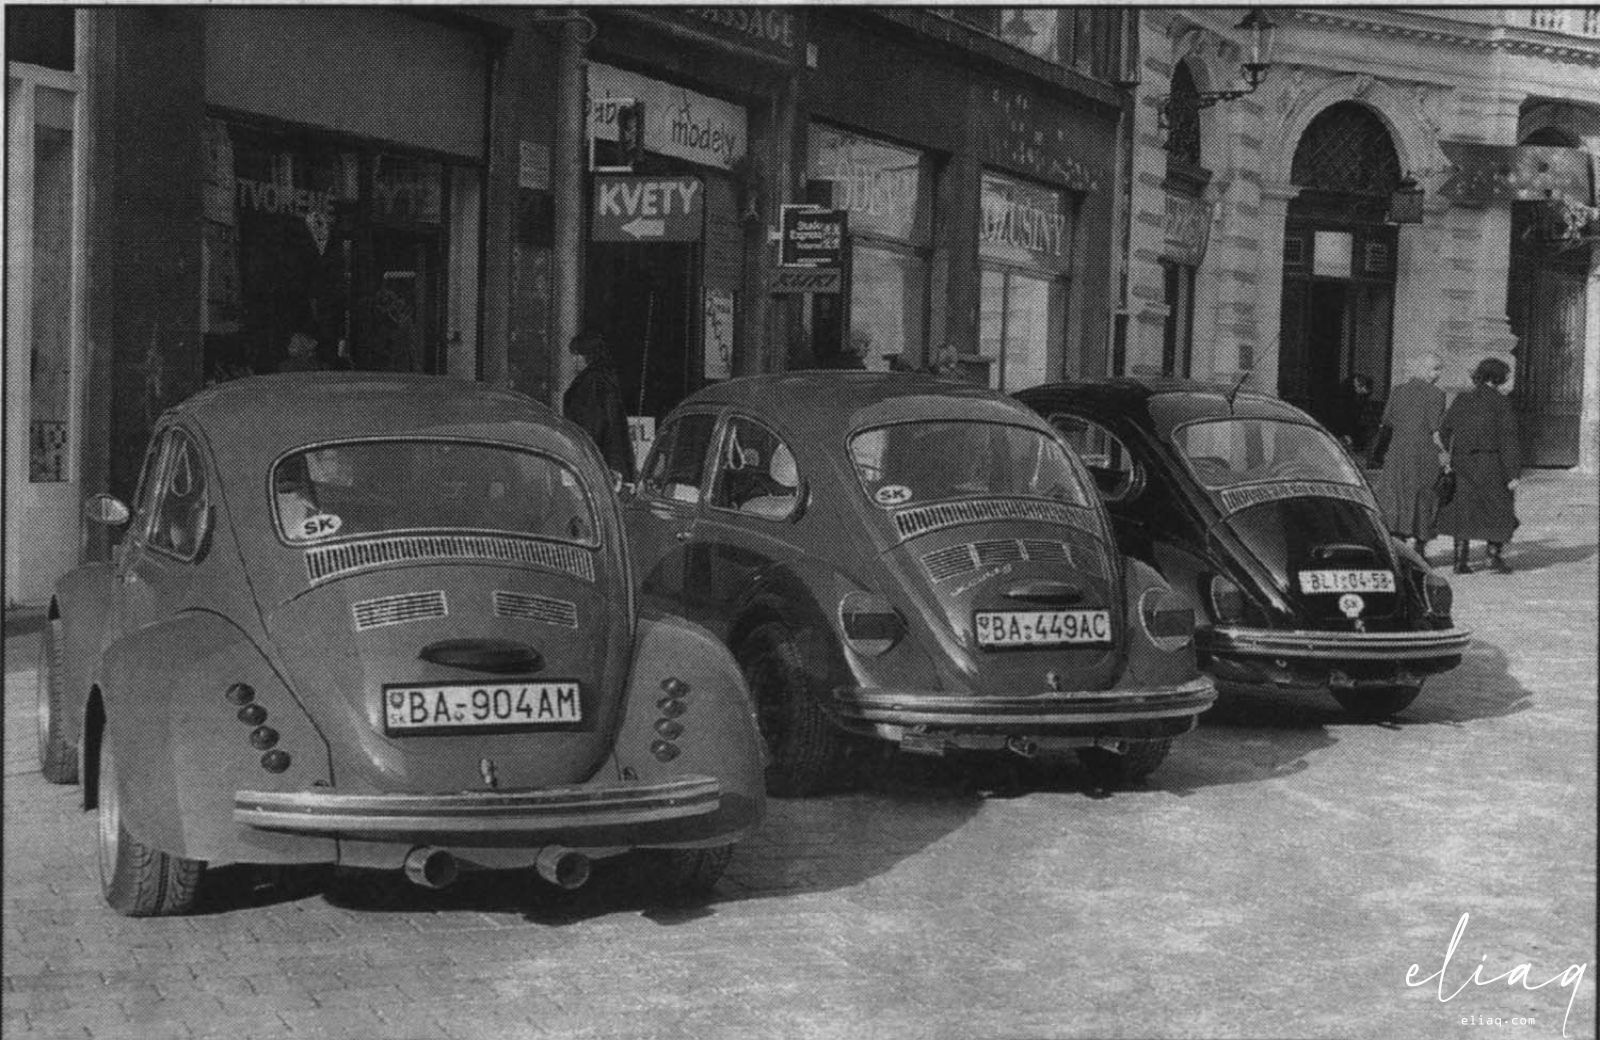 Stará fotka aut z Bratislavy, včetně klenotů z Volkswagen klubu